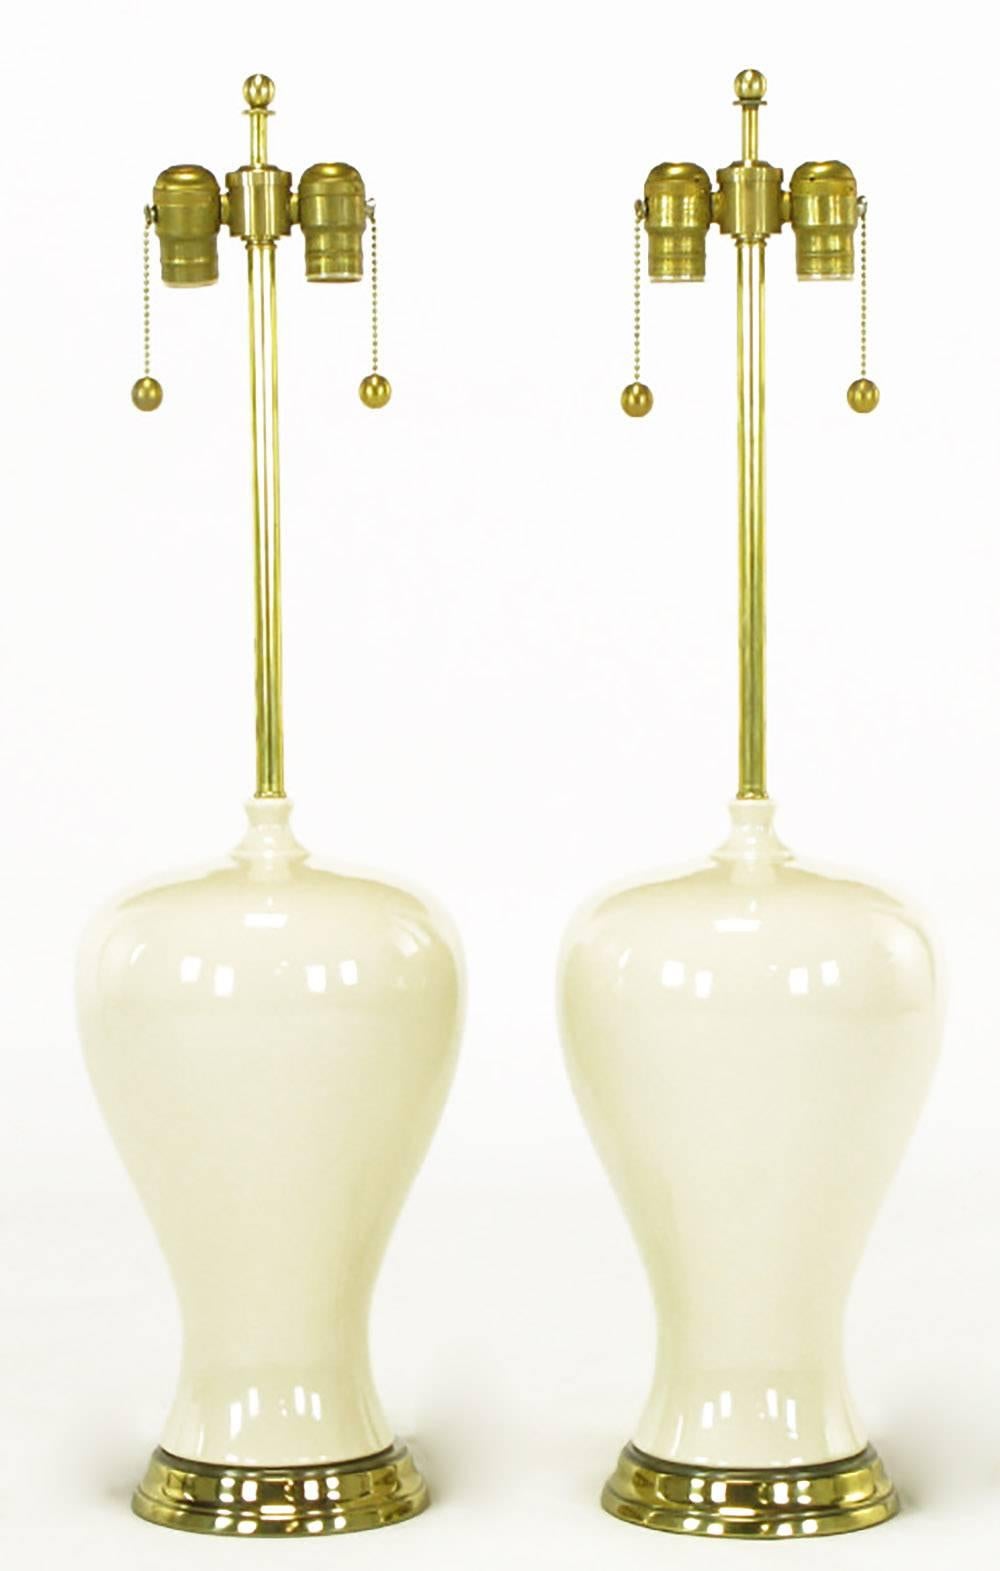 Paire de voluptueuses lampes de table en céramique émaillée ivoire avec bases en laiton patiné. La forme organique se déplace en douceur de la base à la tige en laiton et à la double douille en passant par le corps en céramique ivoire. Vendu sans